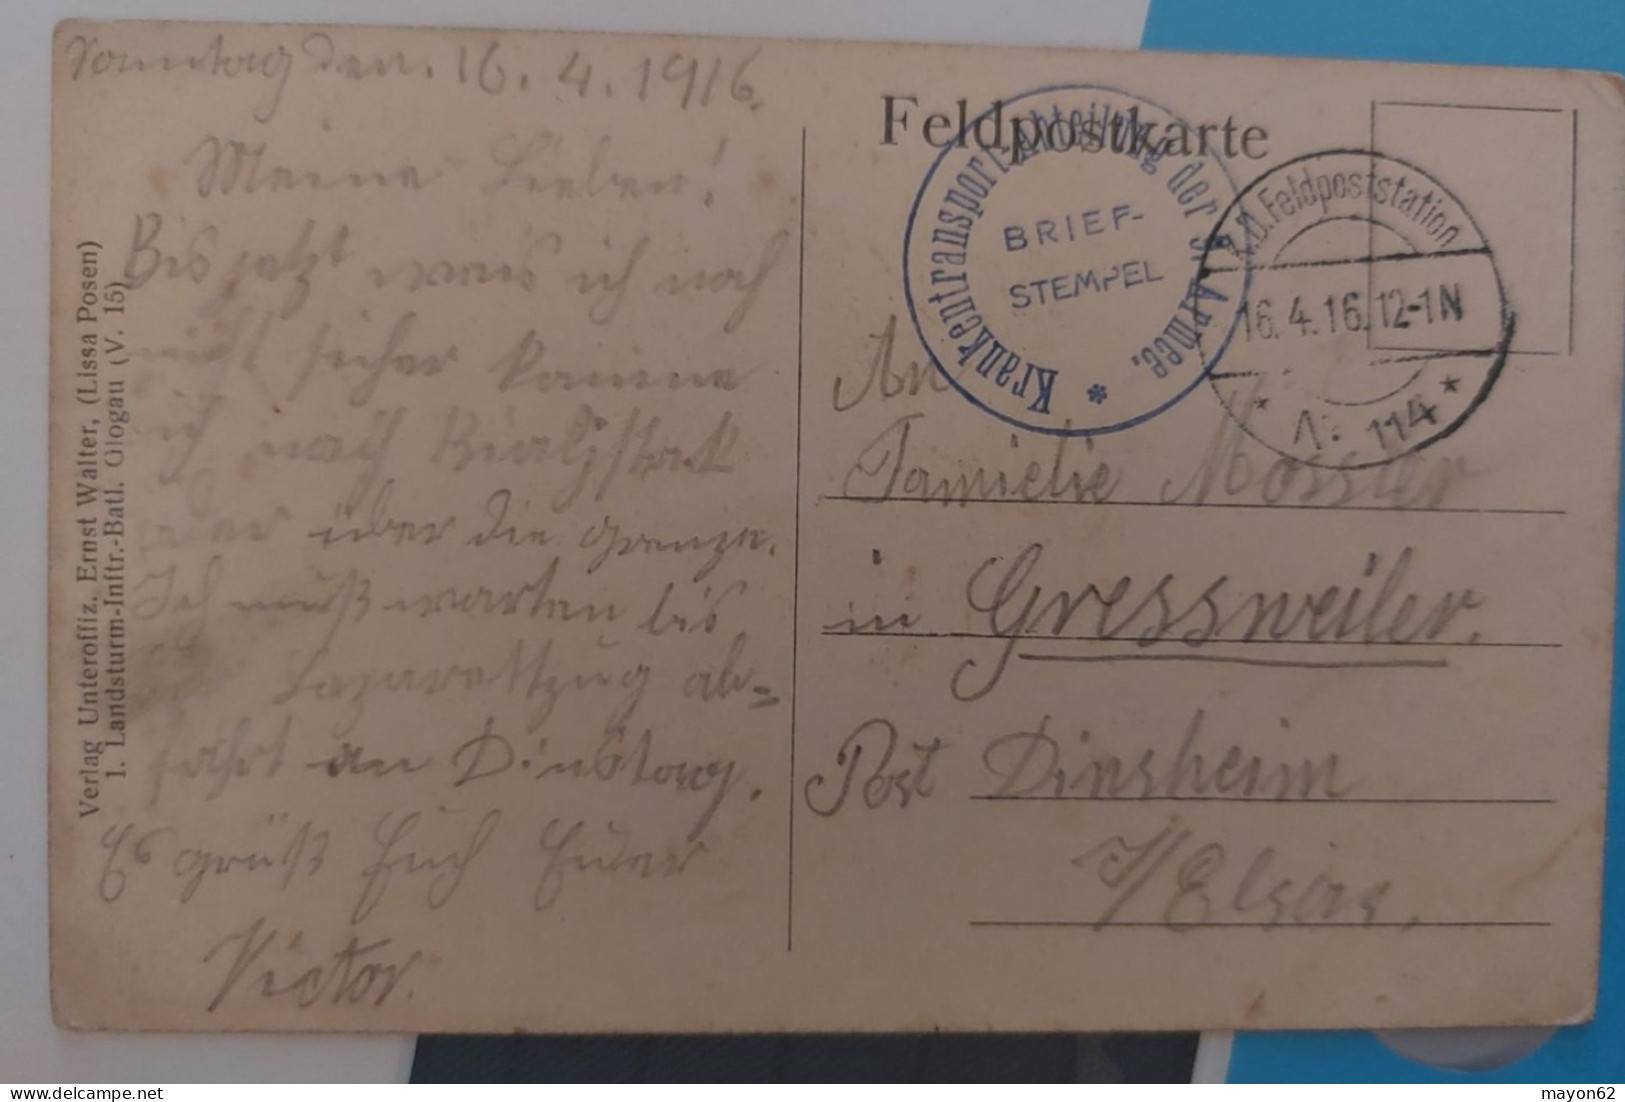 POLSKA - POLEN - POLAND - KLESZCZELE - RUSSISCHE KIRCHE VON DEUTSCHEN GRANATEN ZERSTART - RARA ERNST WALTER 1916 - Pologne